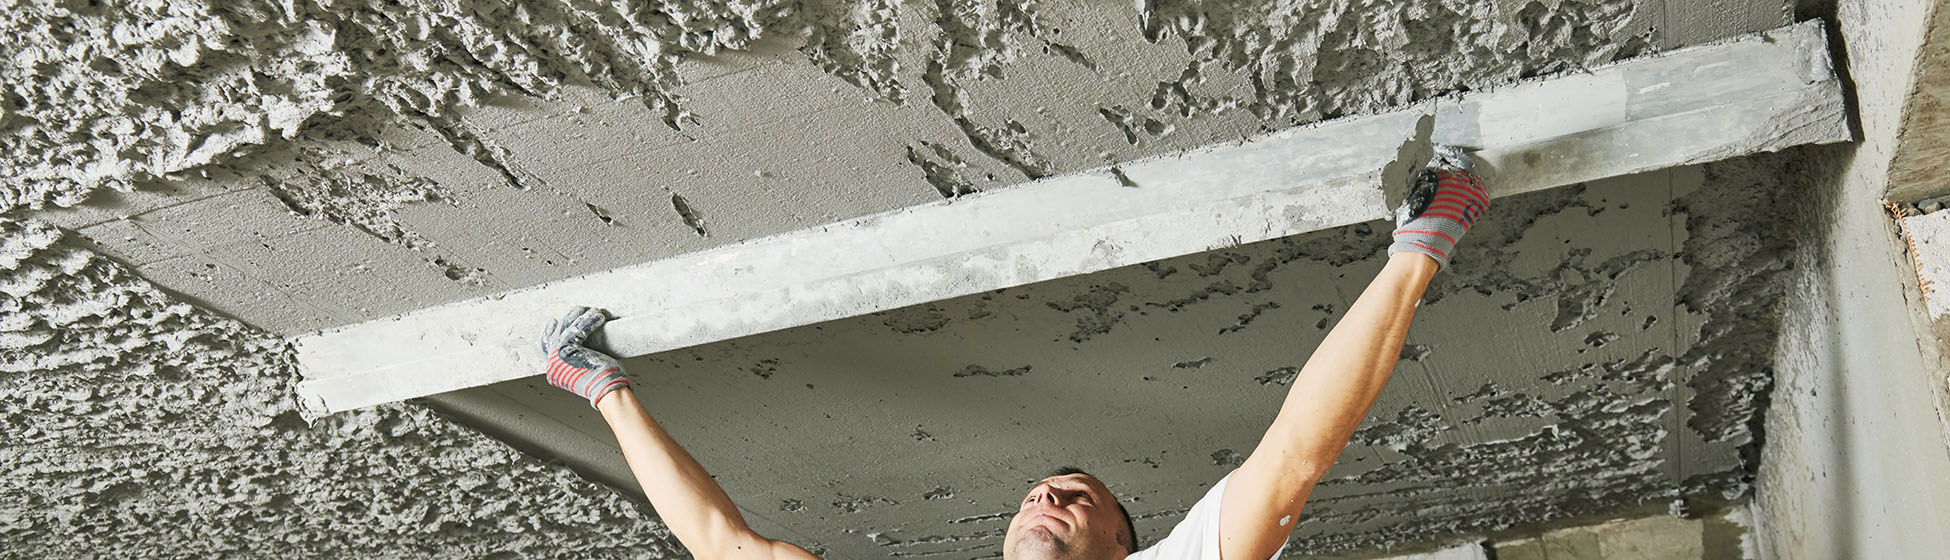 Comment poser un plafond suspendu